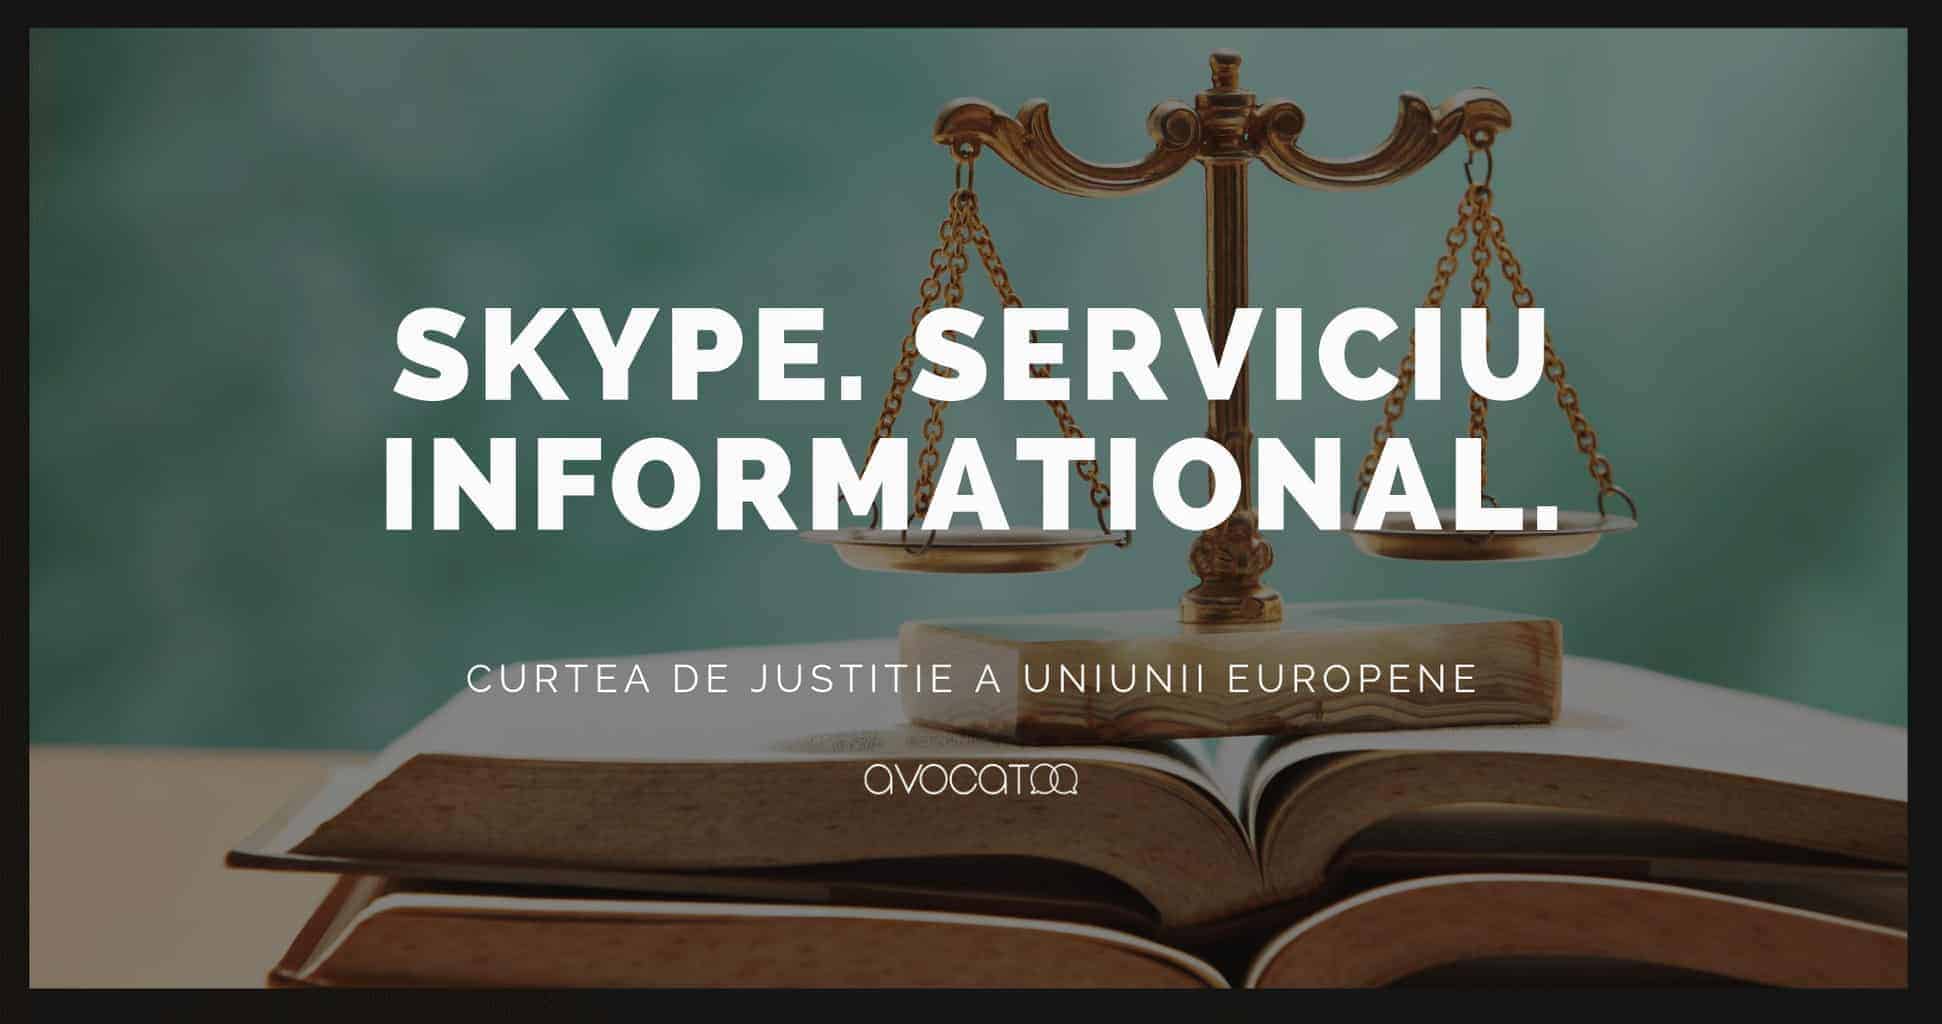 CJUE skype este un serviciu informational